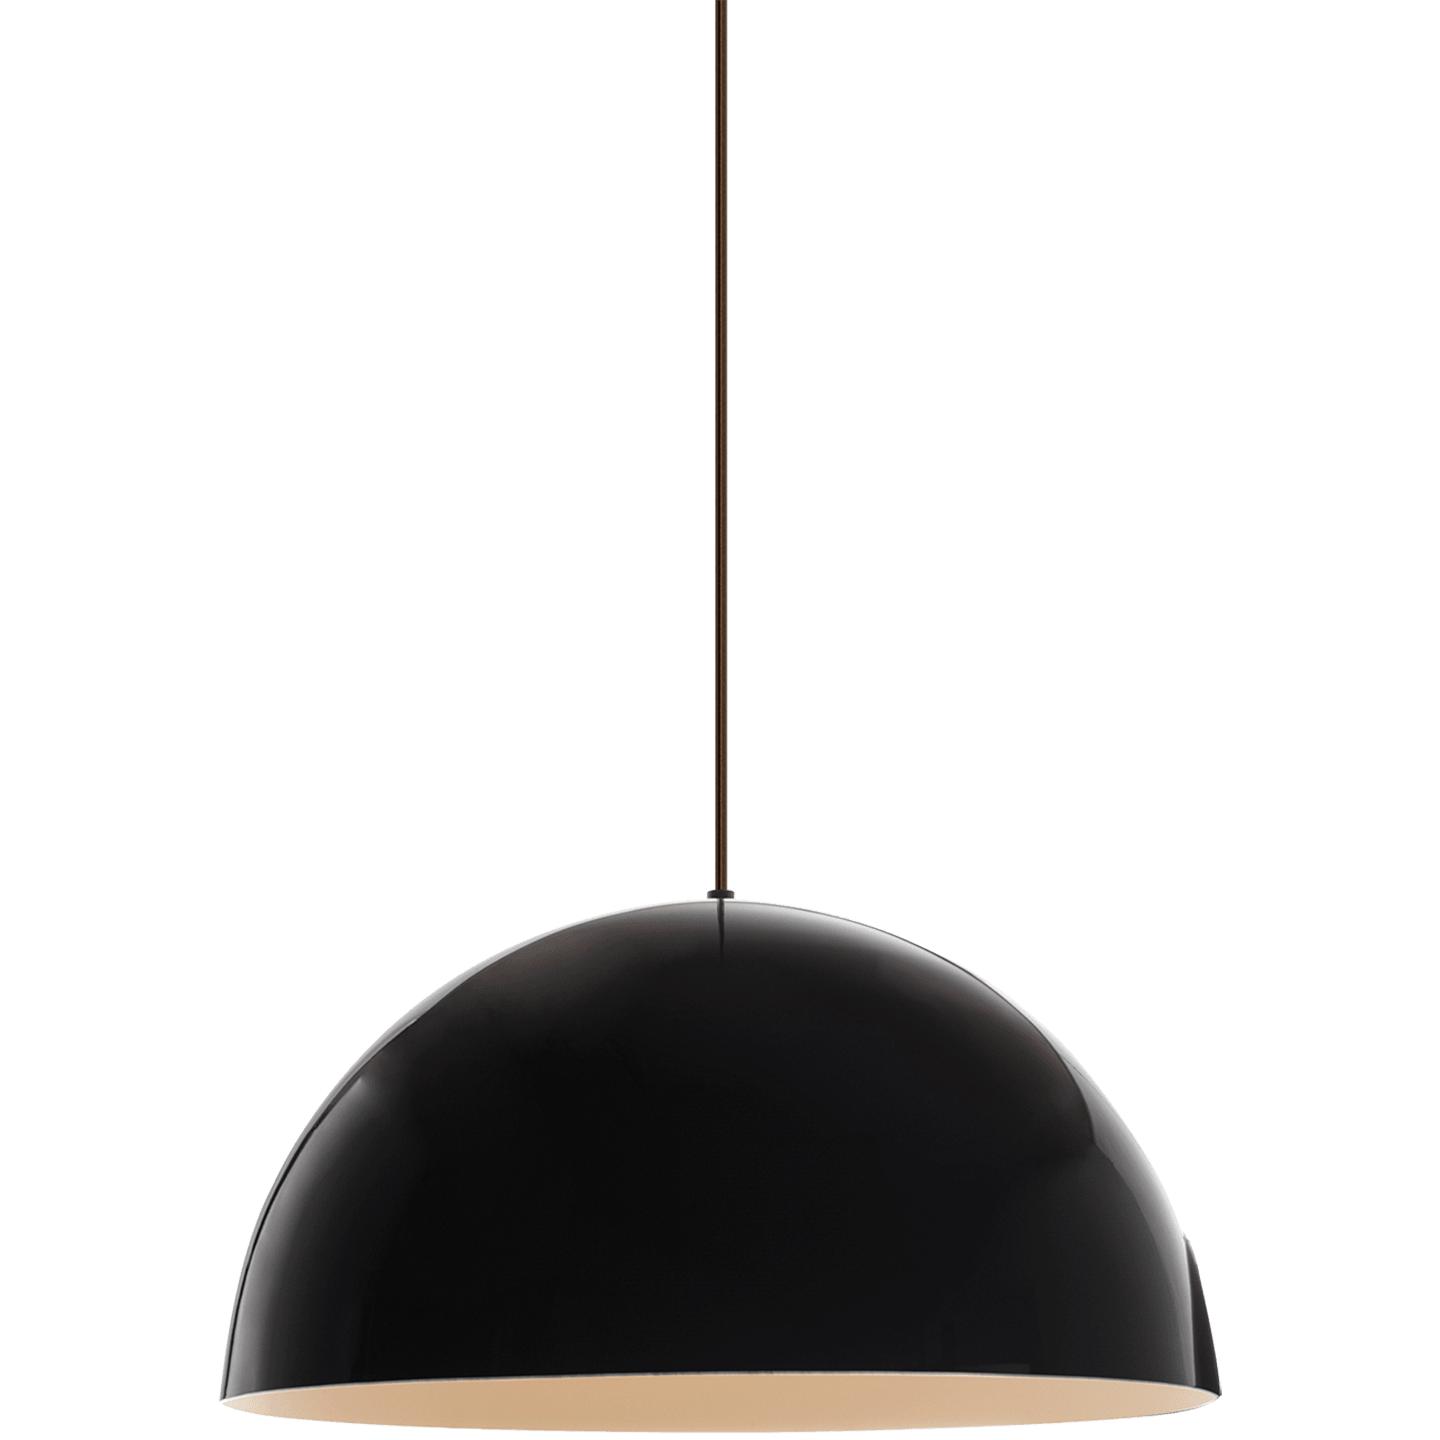 Купить Подвесной светильник Powell Street Pendant в интернет-магазине roooms.ru